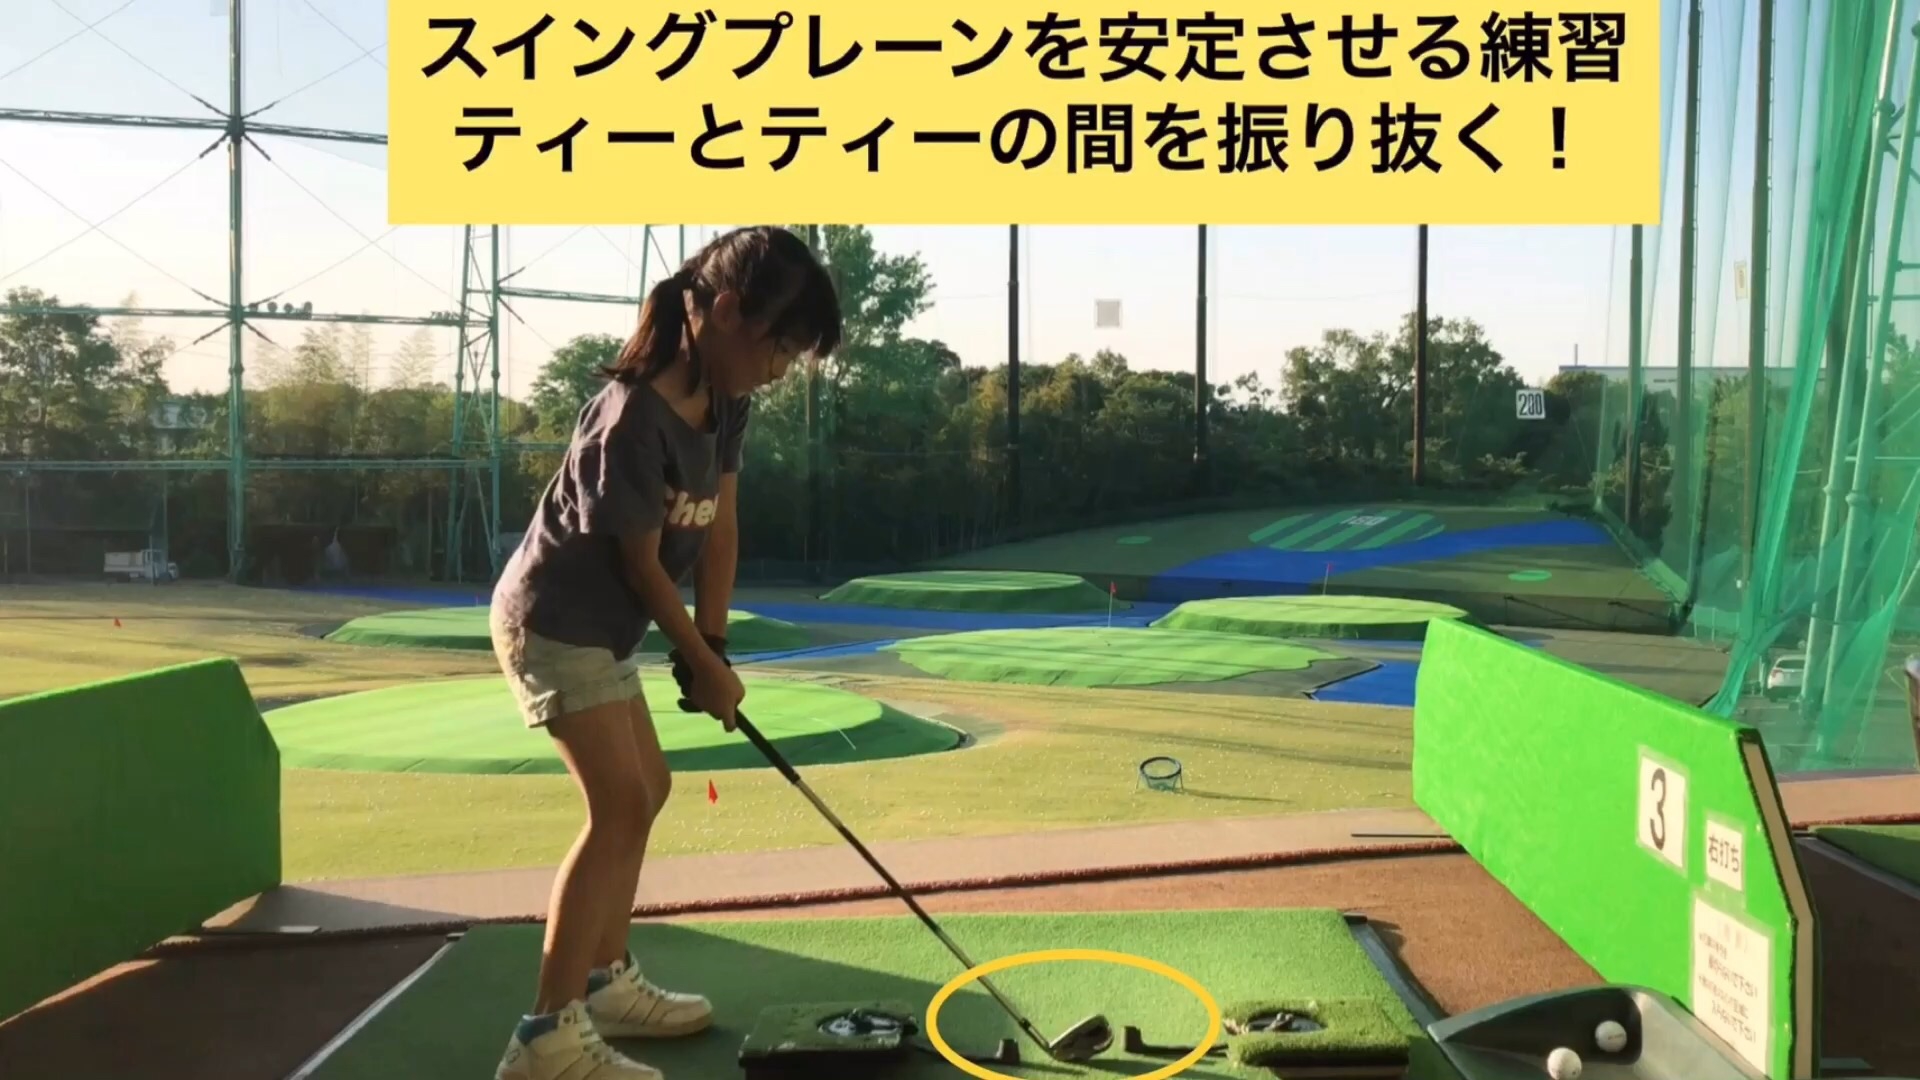 ジュニアレッスン スイングプレーンを安定させる練習 Naokiゴルフ塾 大阪 堺市のゴルフスクール